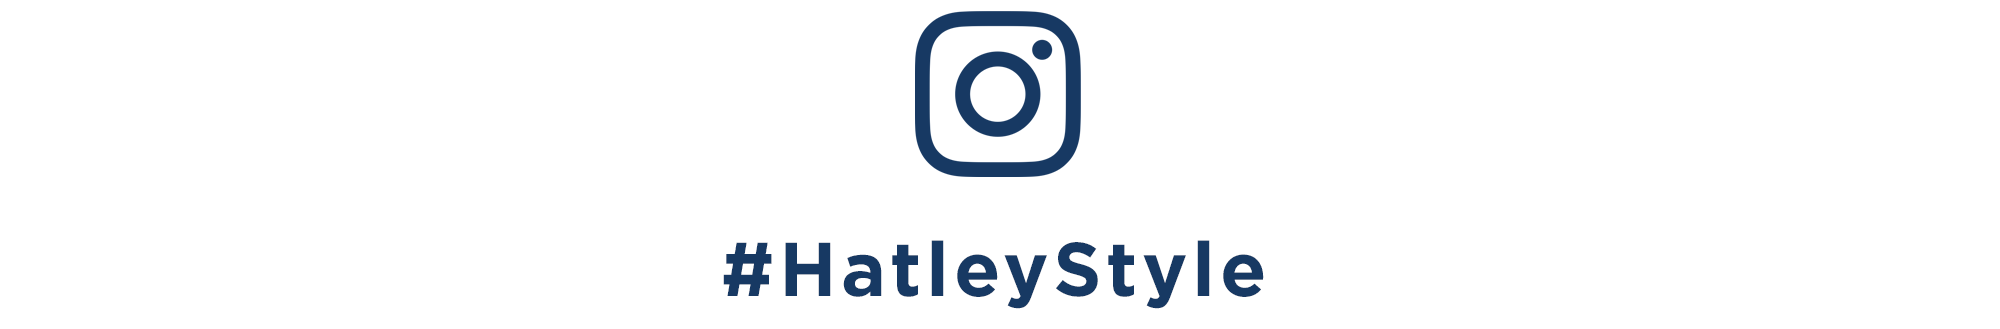 #HatleyStyle on Instagram